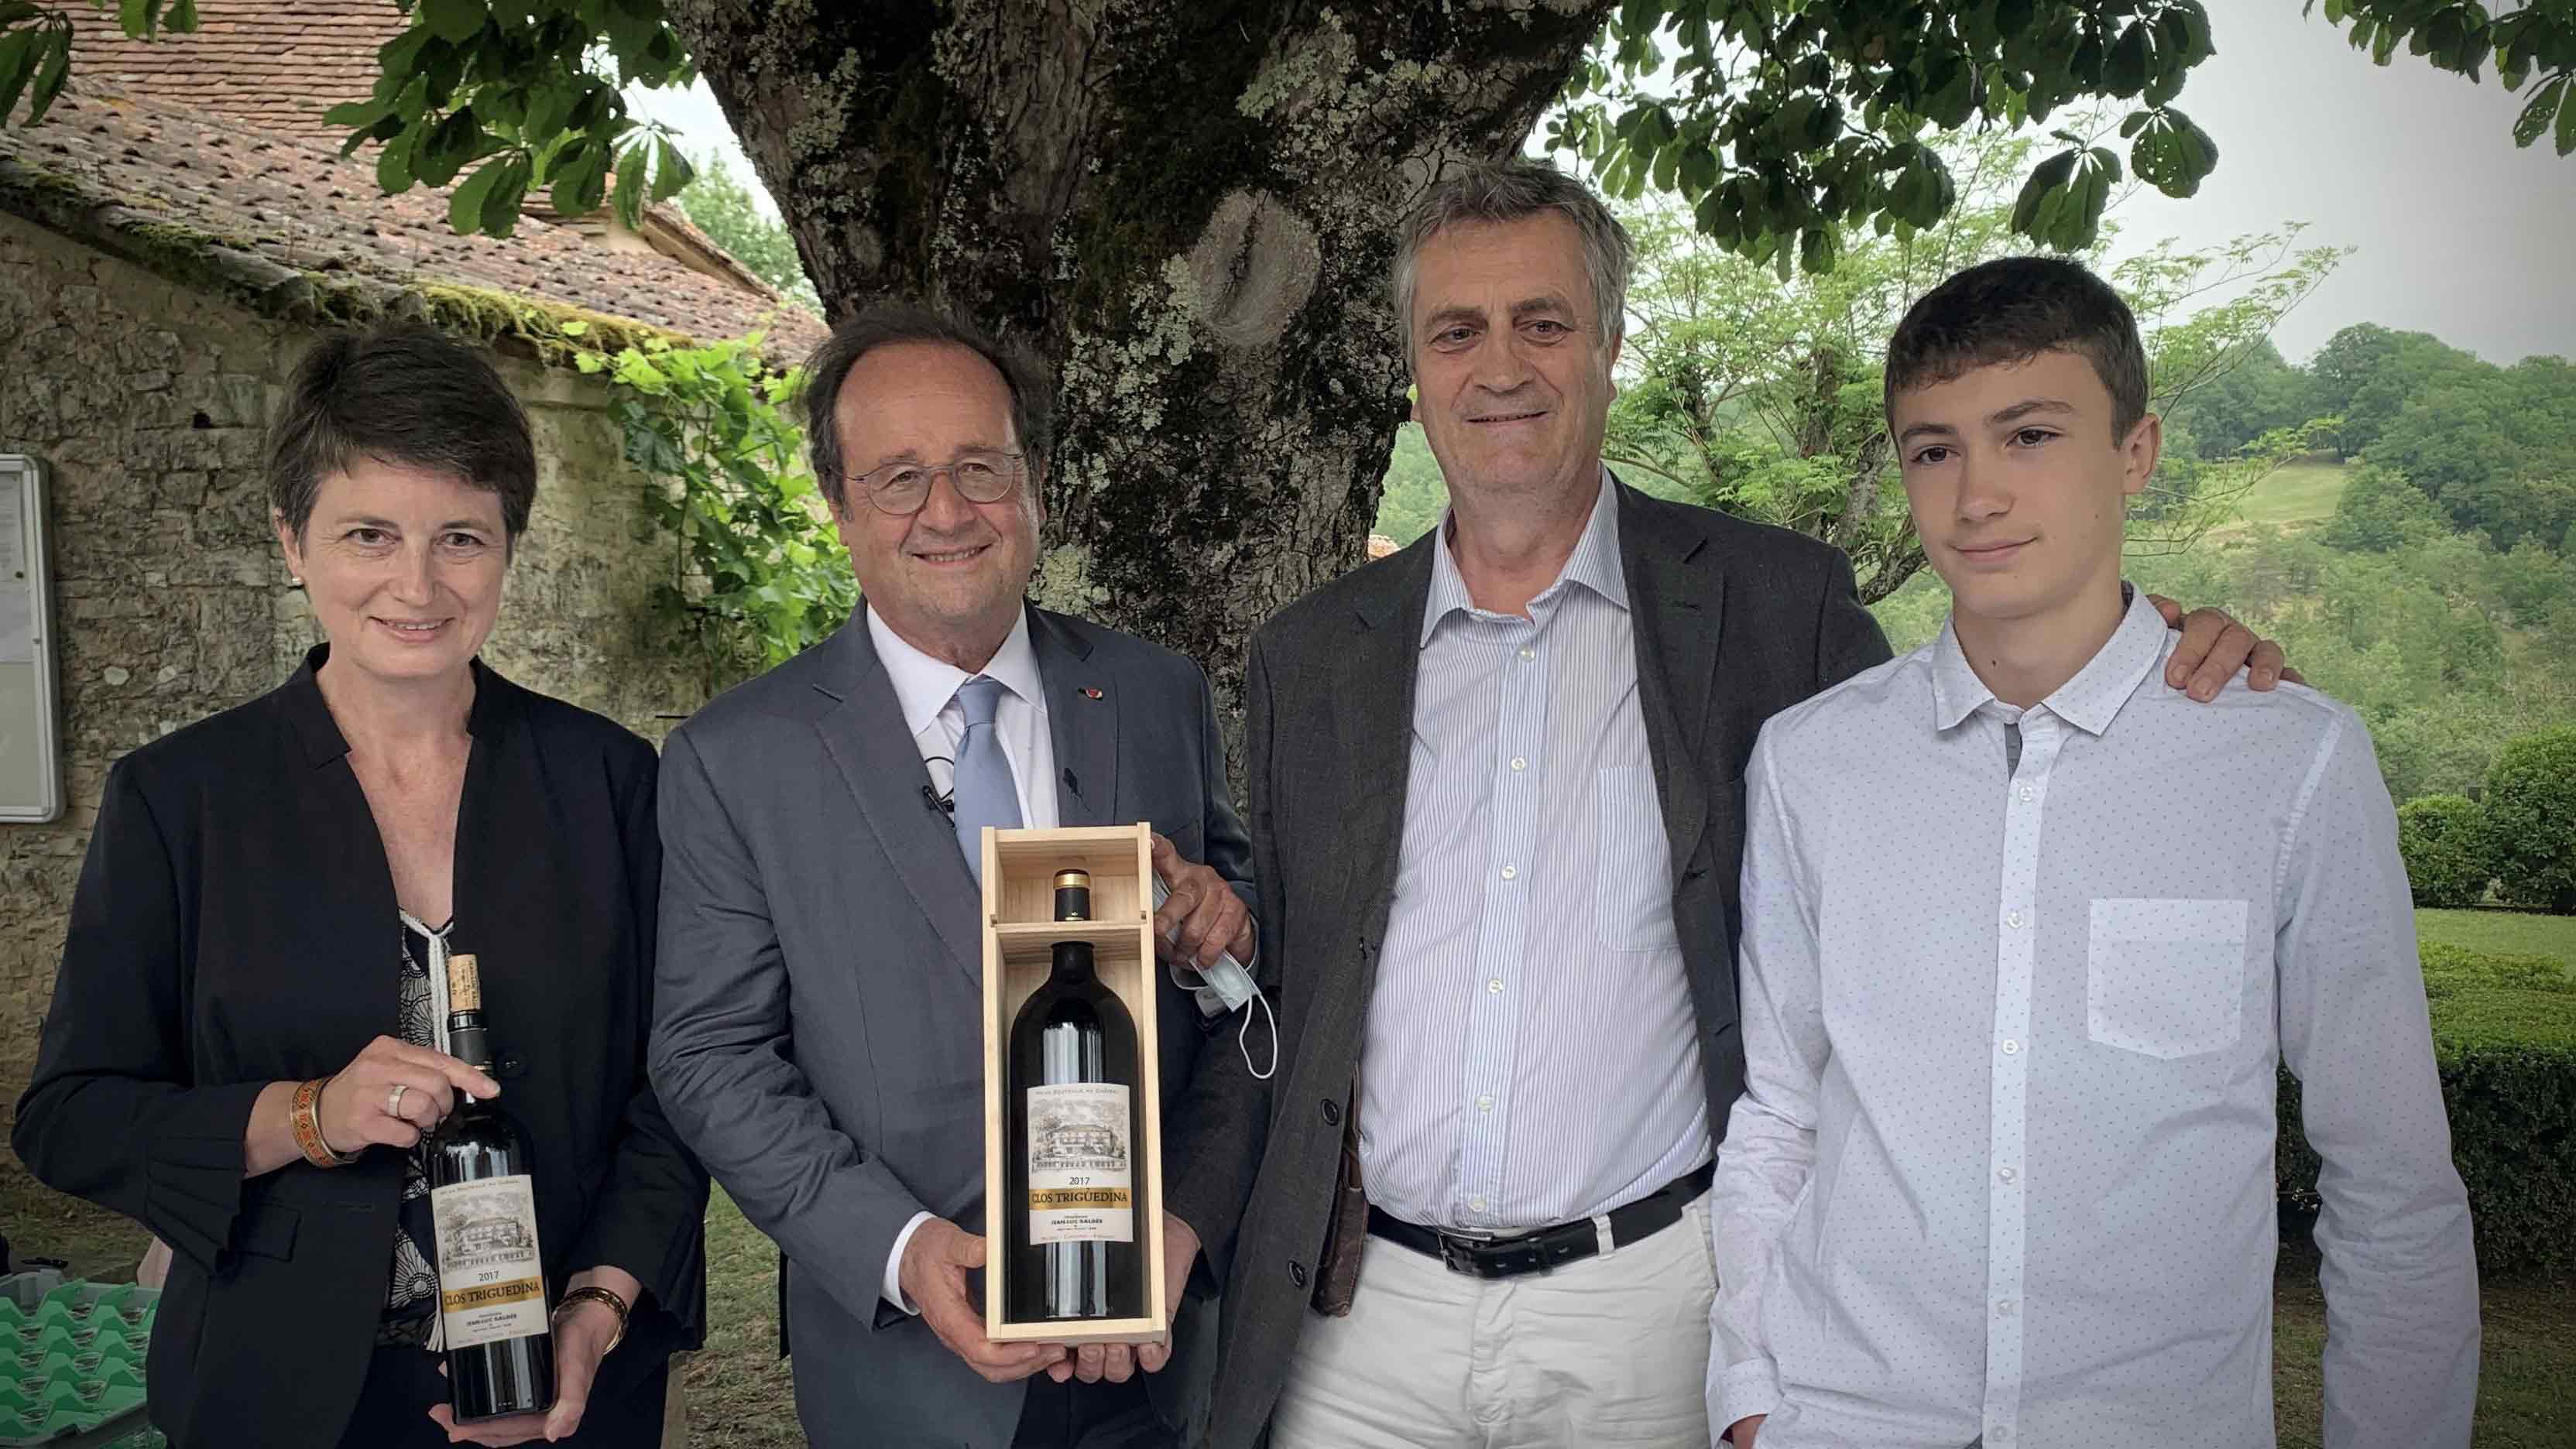 元フランス大統領のオランドが、お気に入りワイン「クロ・トリゲディーナ」をもって、ジャン・リュック・バルデと一緒に撮った家族写真です。